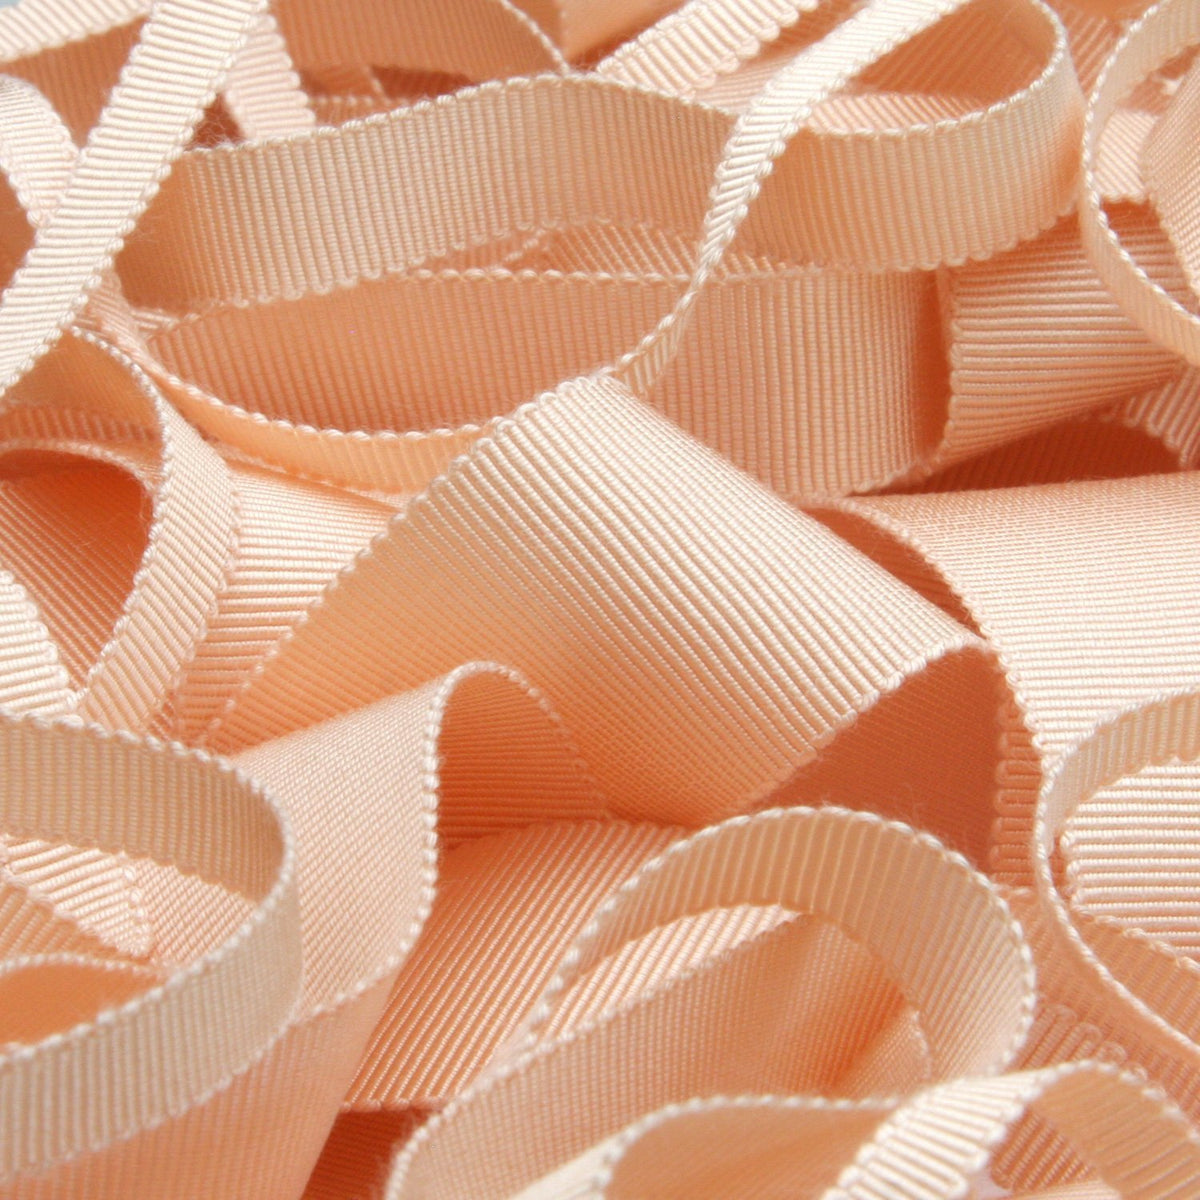 Wholesale] Rayon Grosgrain Ribbon 15mm (19/32) 30 Meters Roll